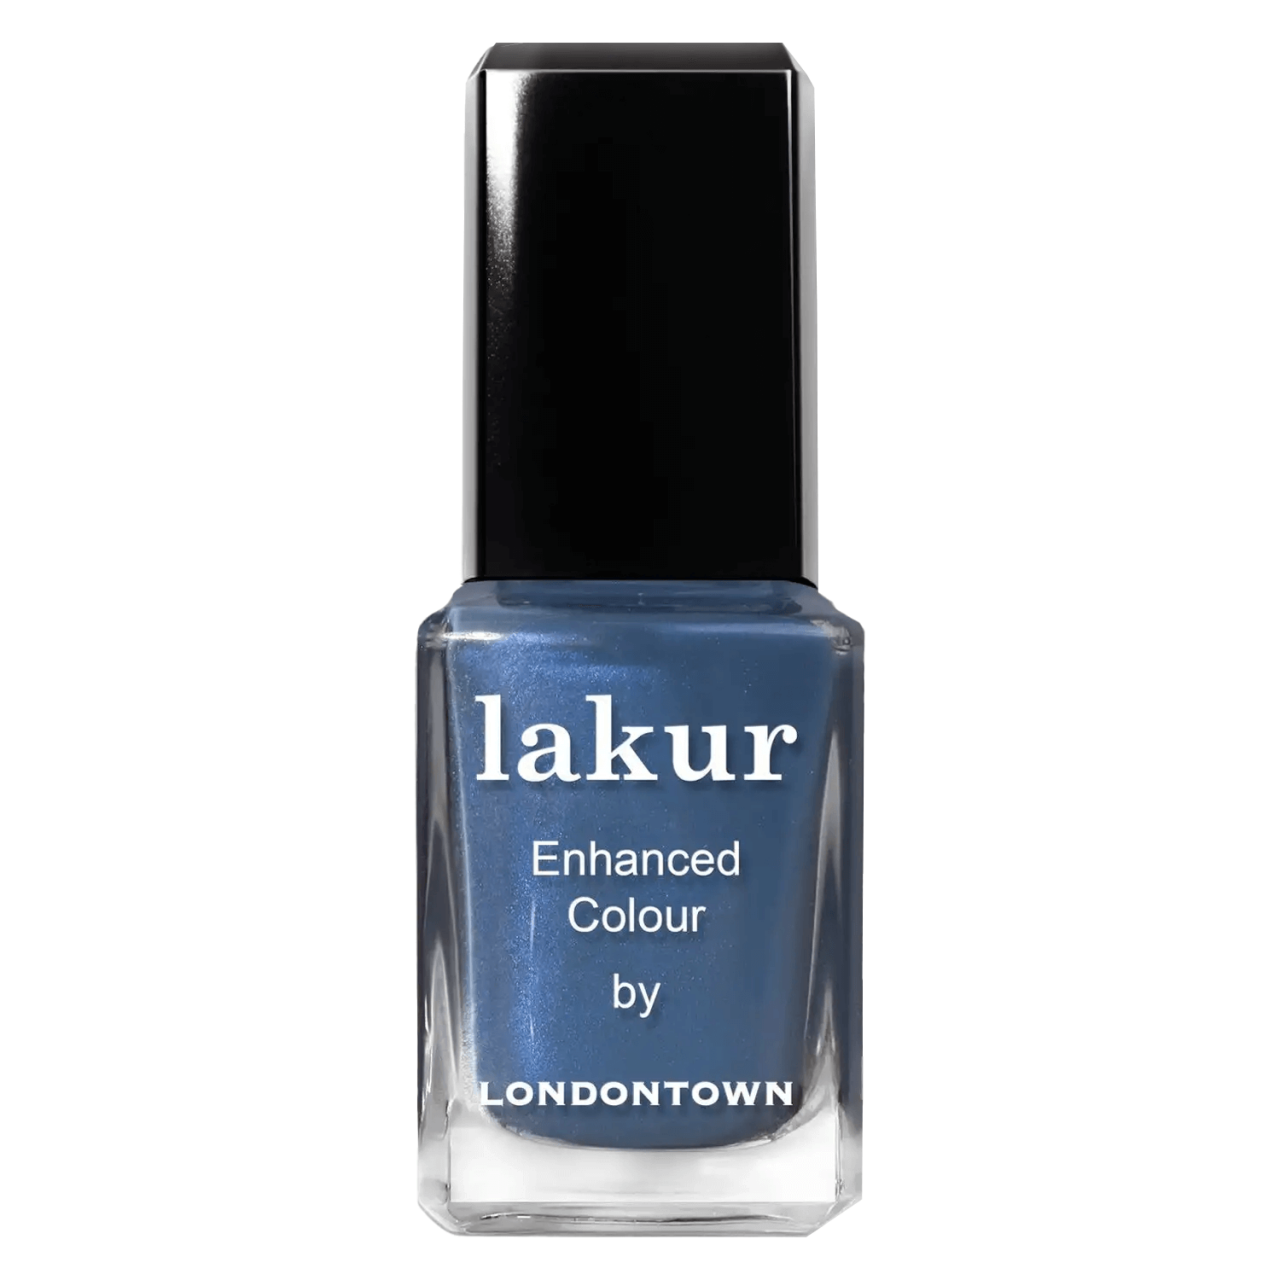 lakur - Blue Diamond von Londontown